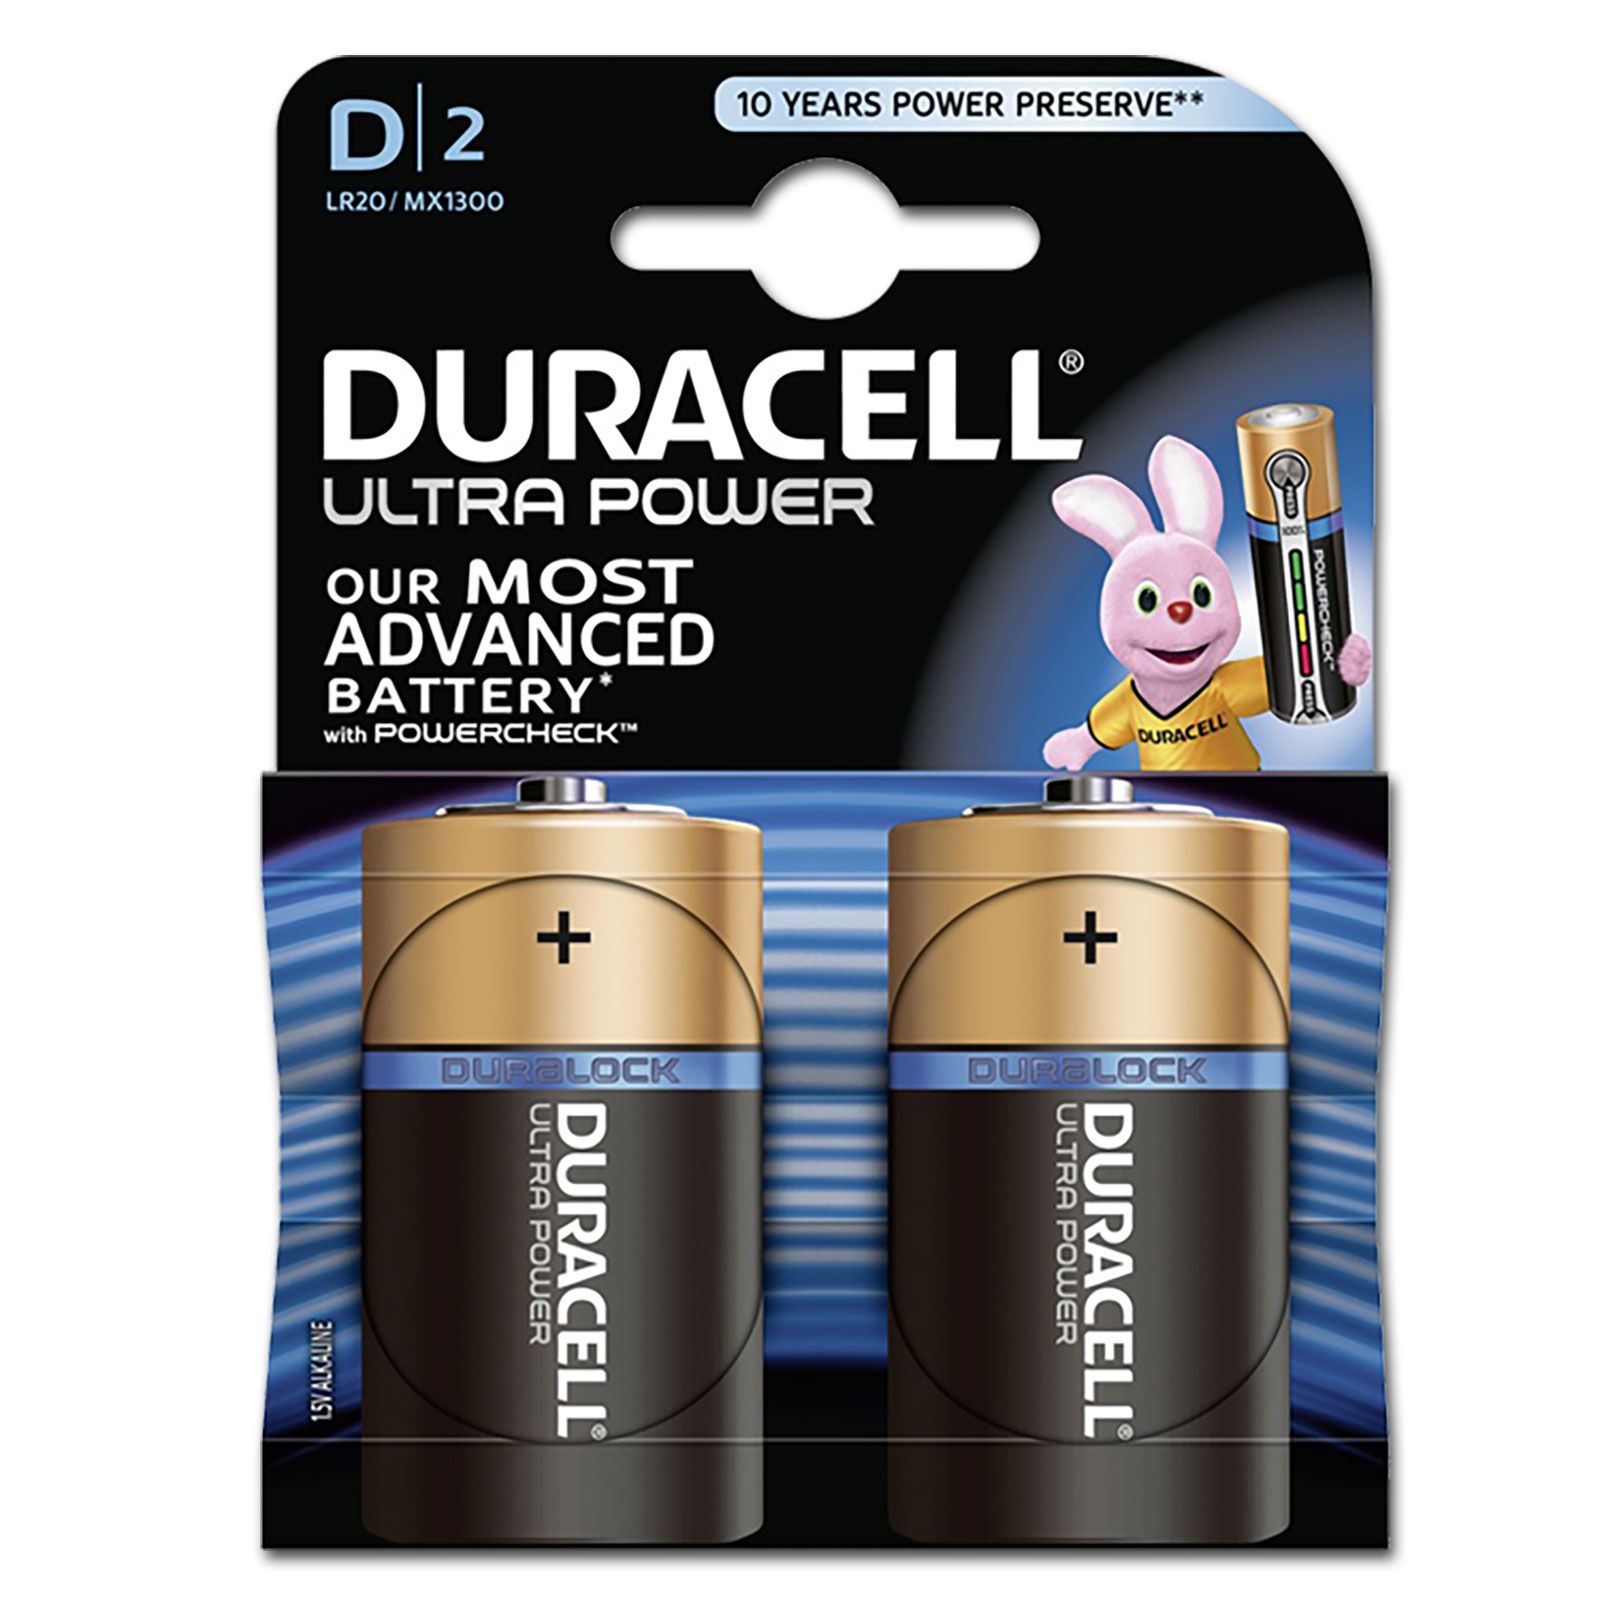 DURACELL Ultra Power MX1300 D BL2